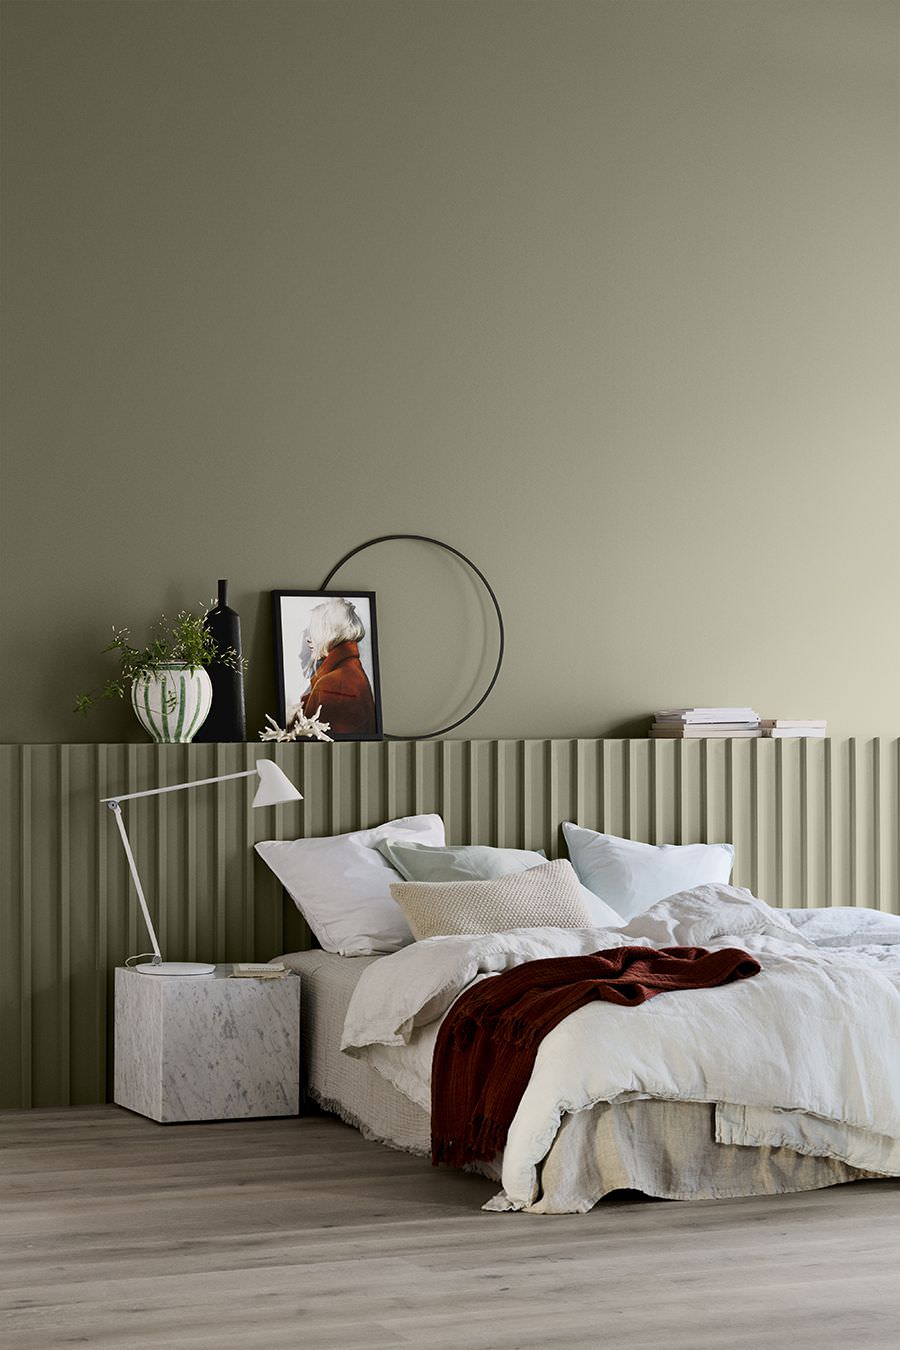 طراحی داخلی اتاق خواب مدرن و ساده با دیوارهای طوسی رنگ که با استفاده از تکرار در آن ریتم ایجاد شده است